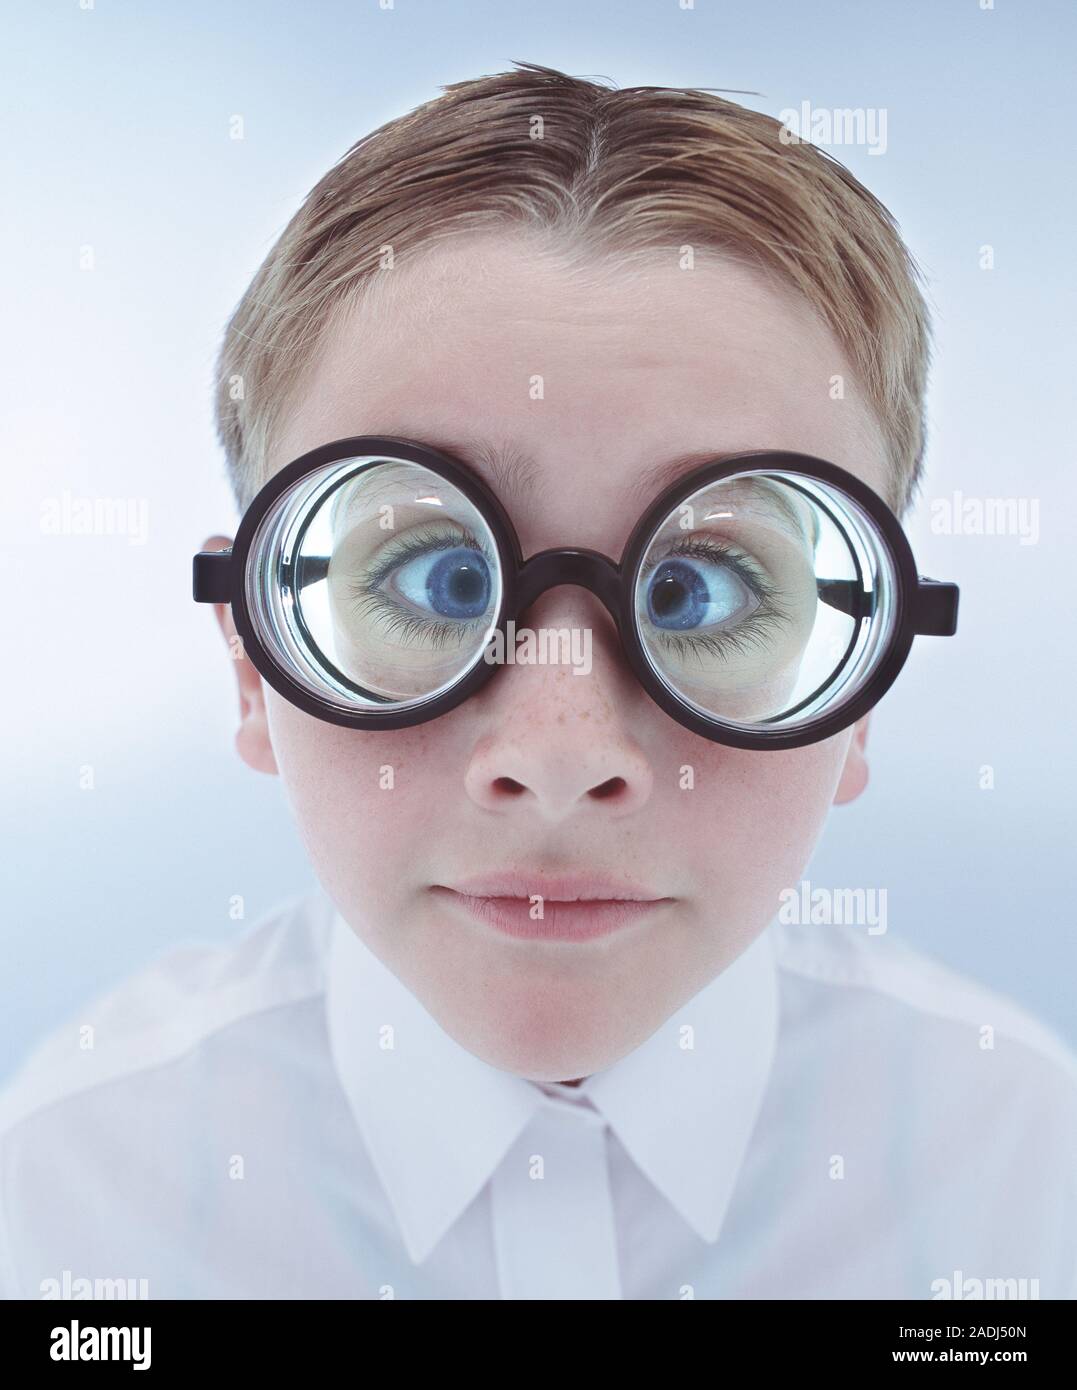 Espectáculos. Niño usando gafas o gafas de óptica con lentes muy fuerte.  Los gruesos lentes de lupa son los ojos del muchacho Fotografía de stock -  Alamy